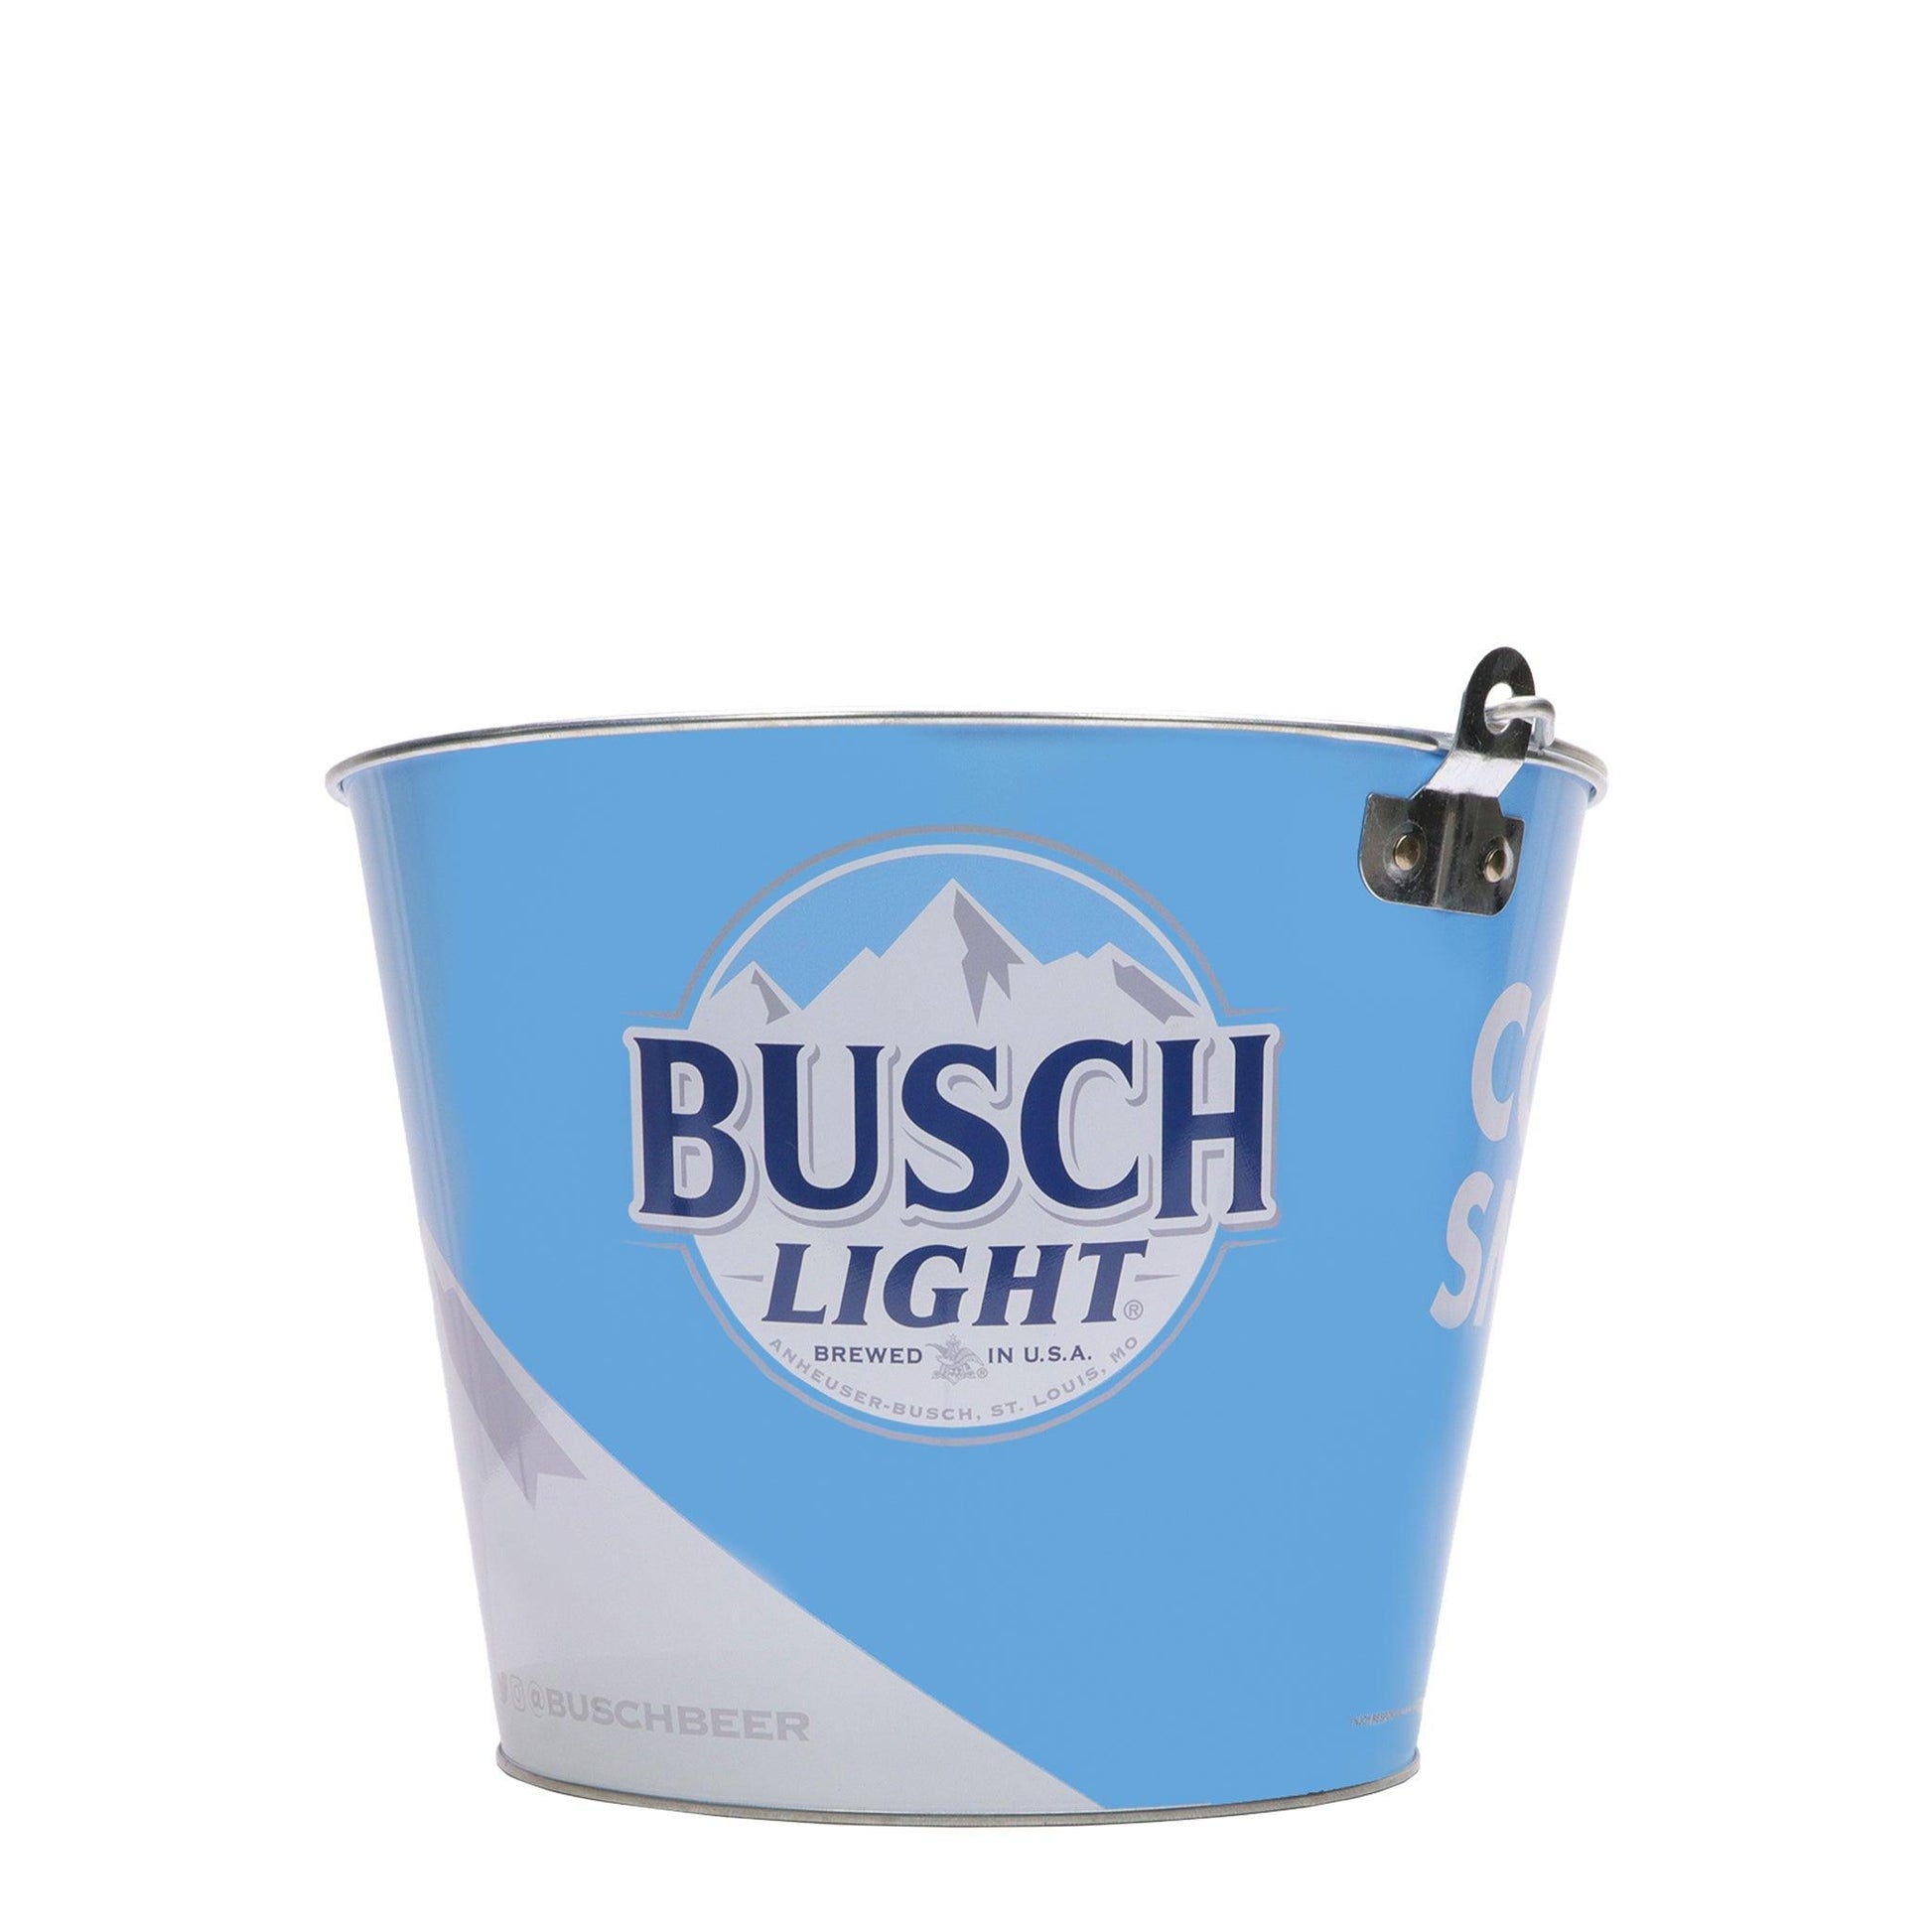 busch light logo on side of bucket 